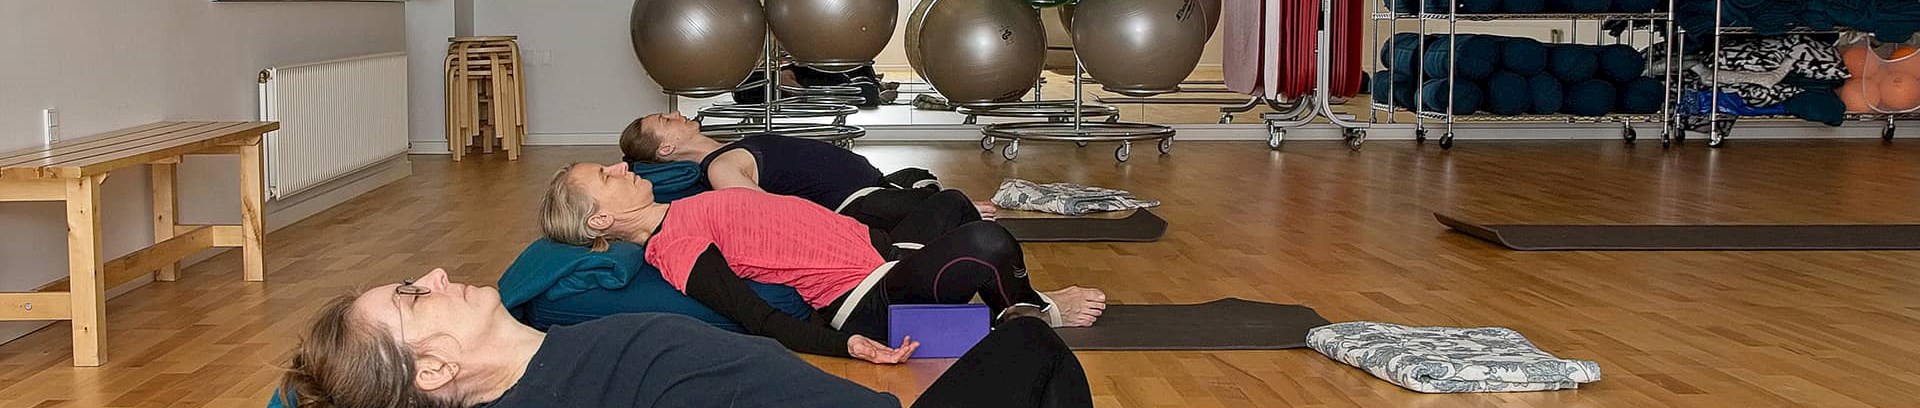 Undervisning i patanjali-yoga hos FOF Aarhus, underviser internationalt certificeret Patanjali Yogalærer Level 2 Charlotte Laursen Rommers